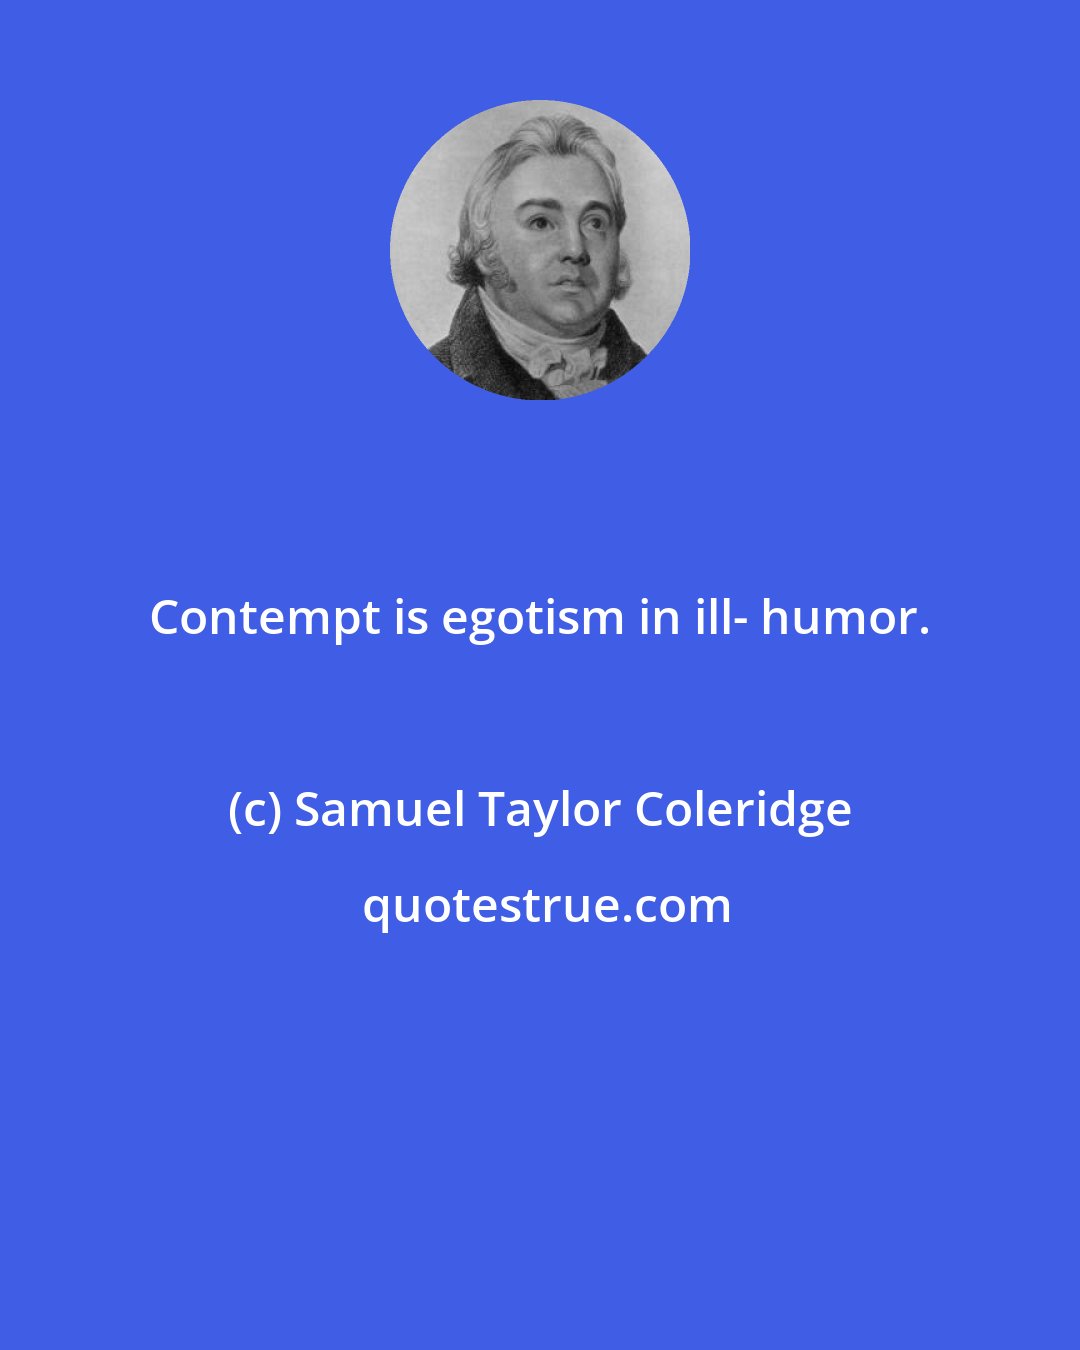 Samuel Taylor Coleridge: Contempt is egotism in ill- humor.